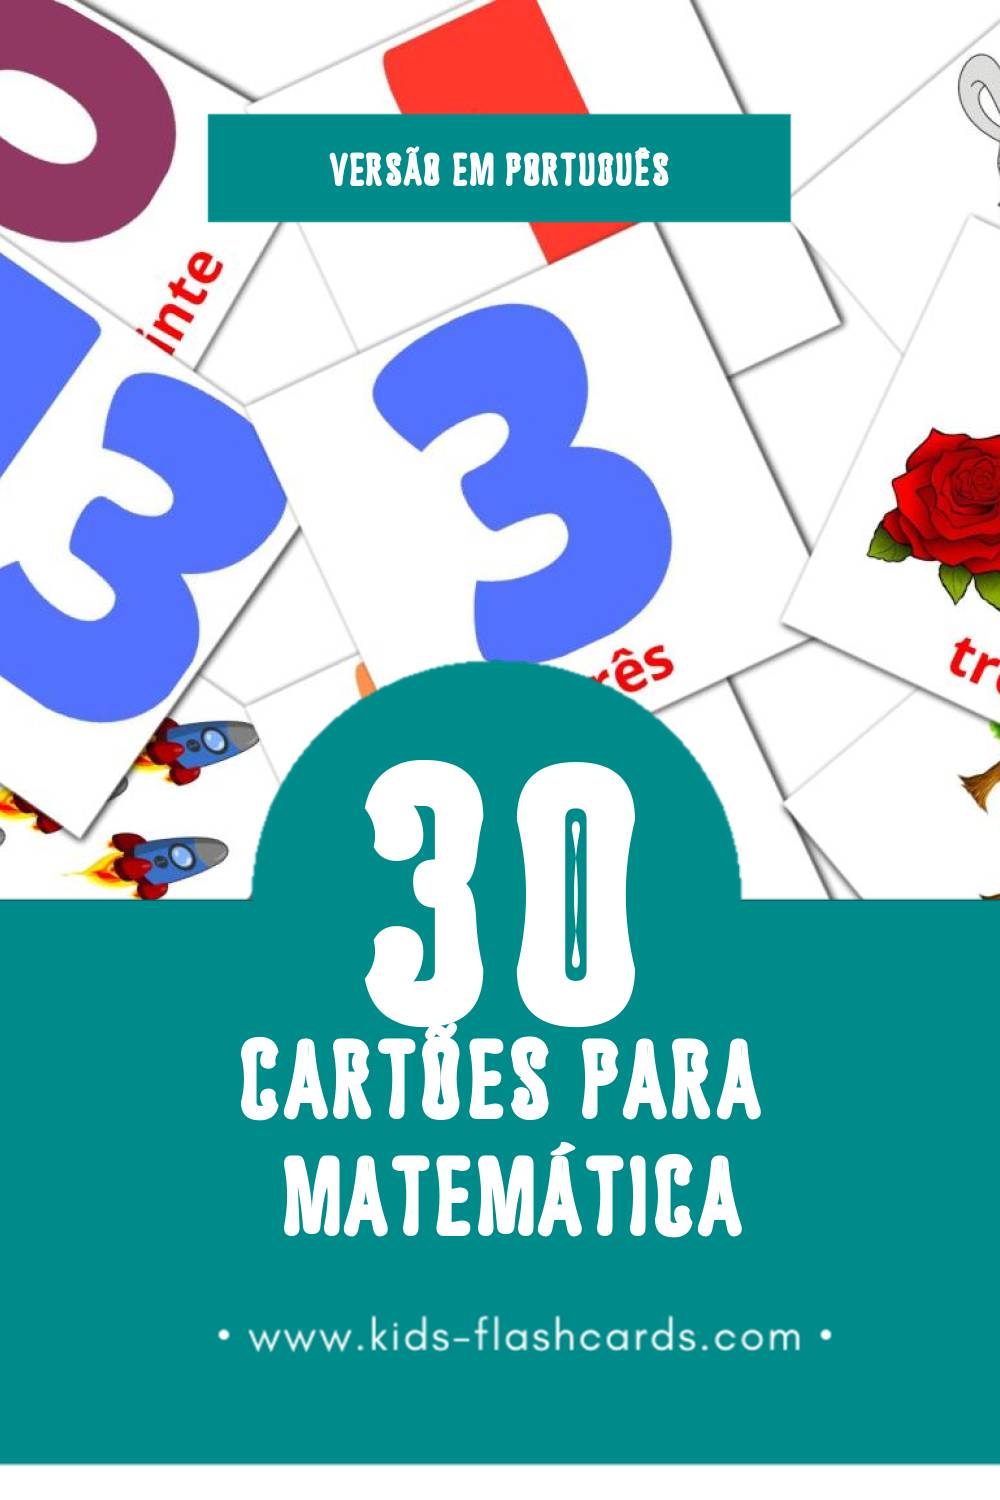 Flashcards de Matemática Visuais para Toddlers (30 cartões em Português)